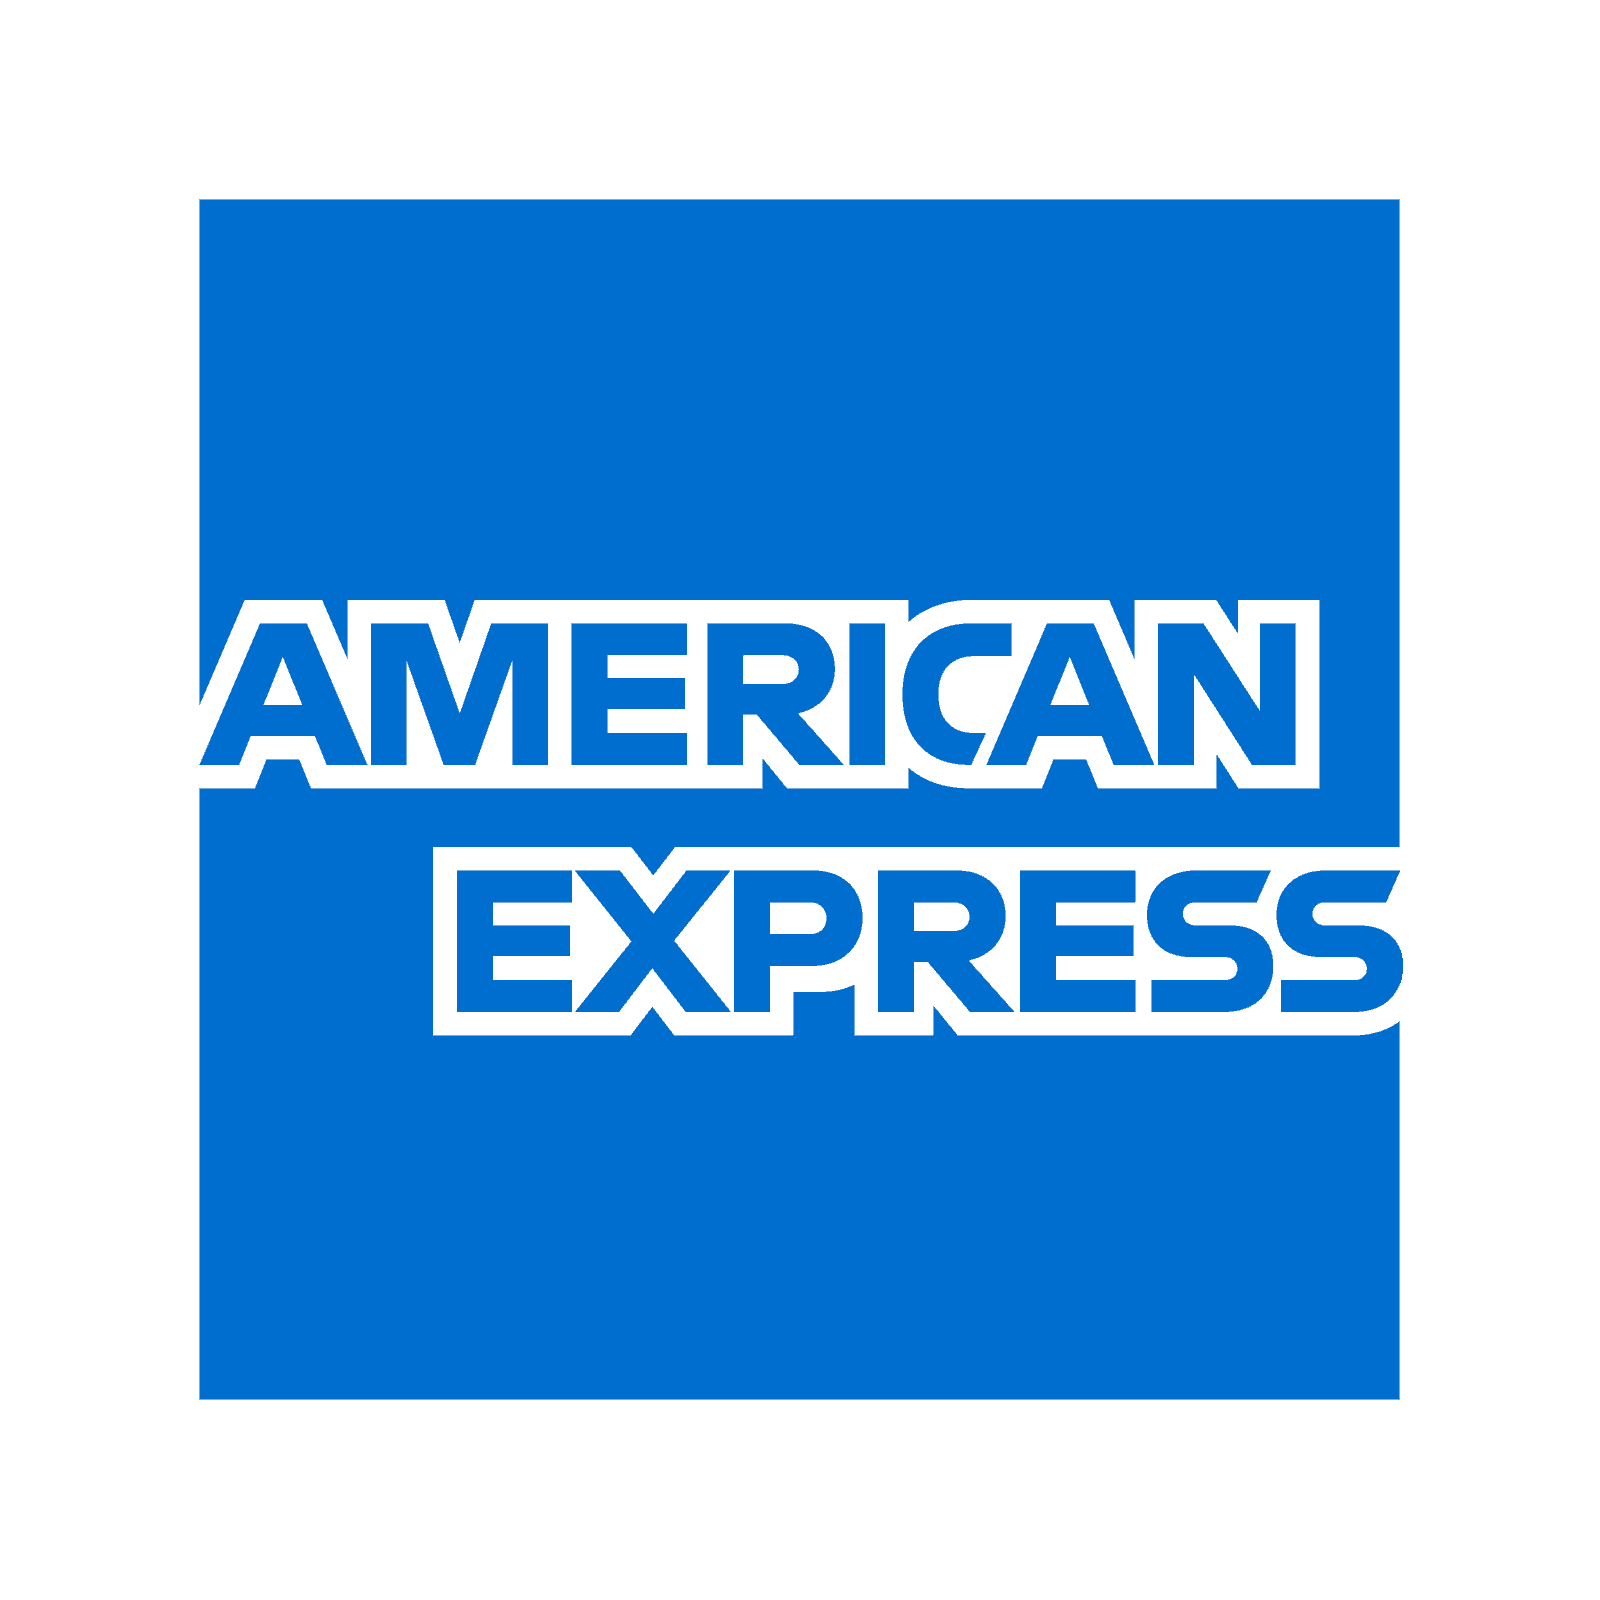 Tegenvallende winst voor American Express